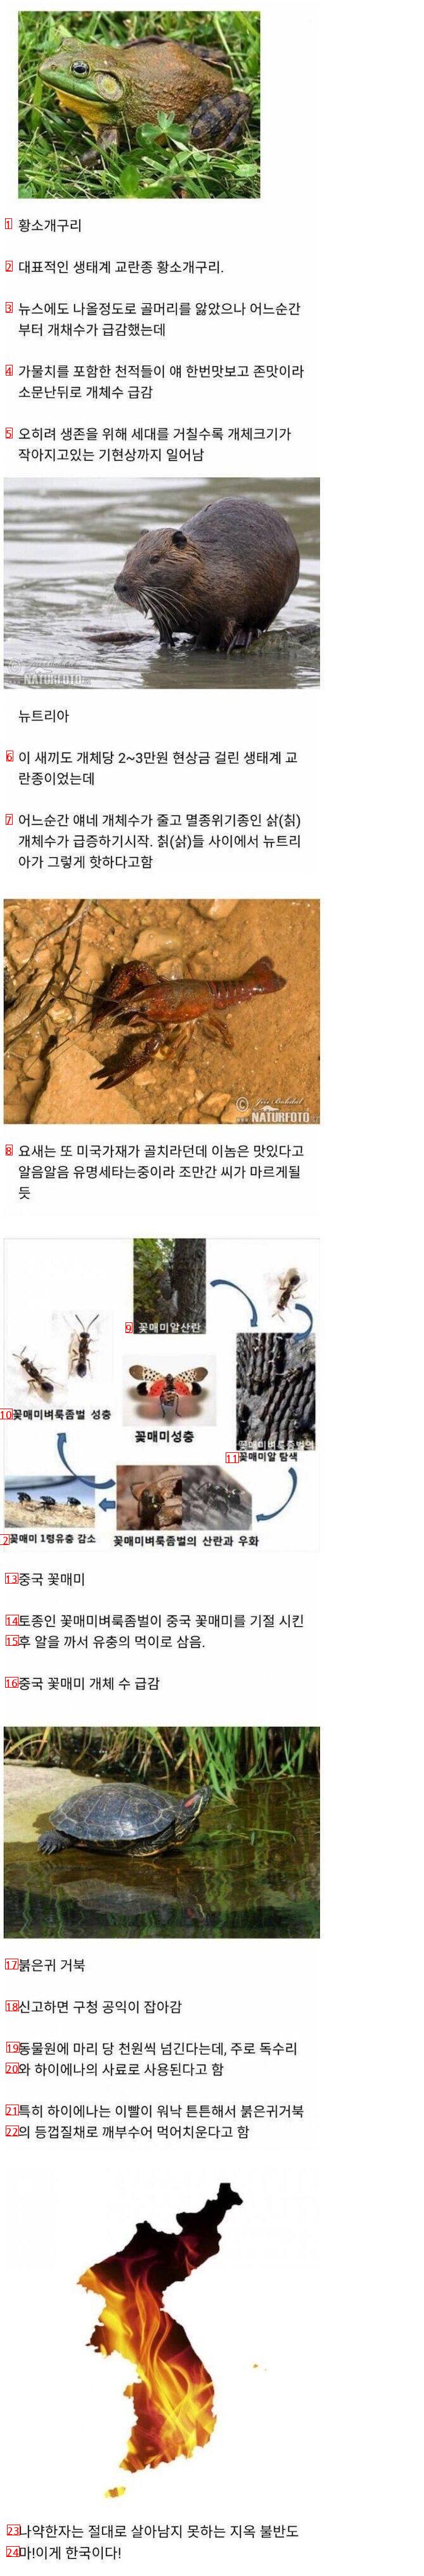 한국에 침범했던 외래종들 근황